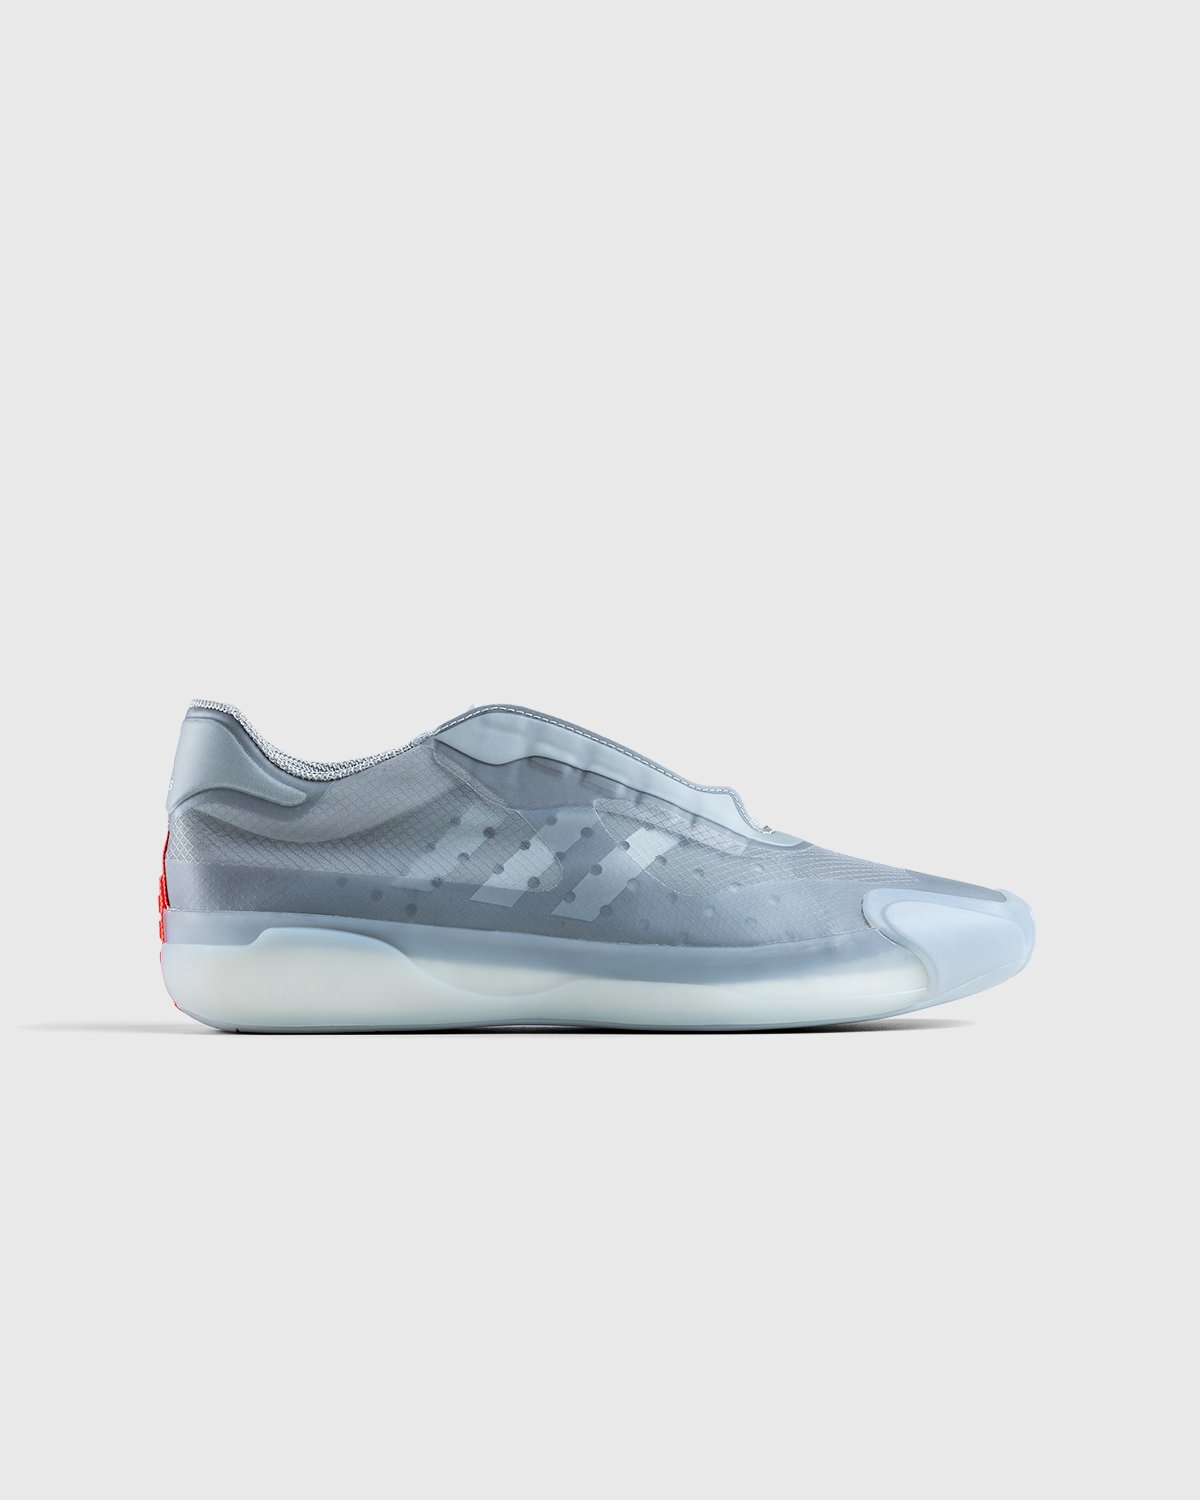 Adidas x Prada - A+P Luna Rossa 21 Performance - Footwear - Grey - Image 1